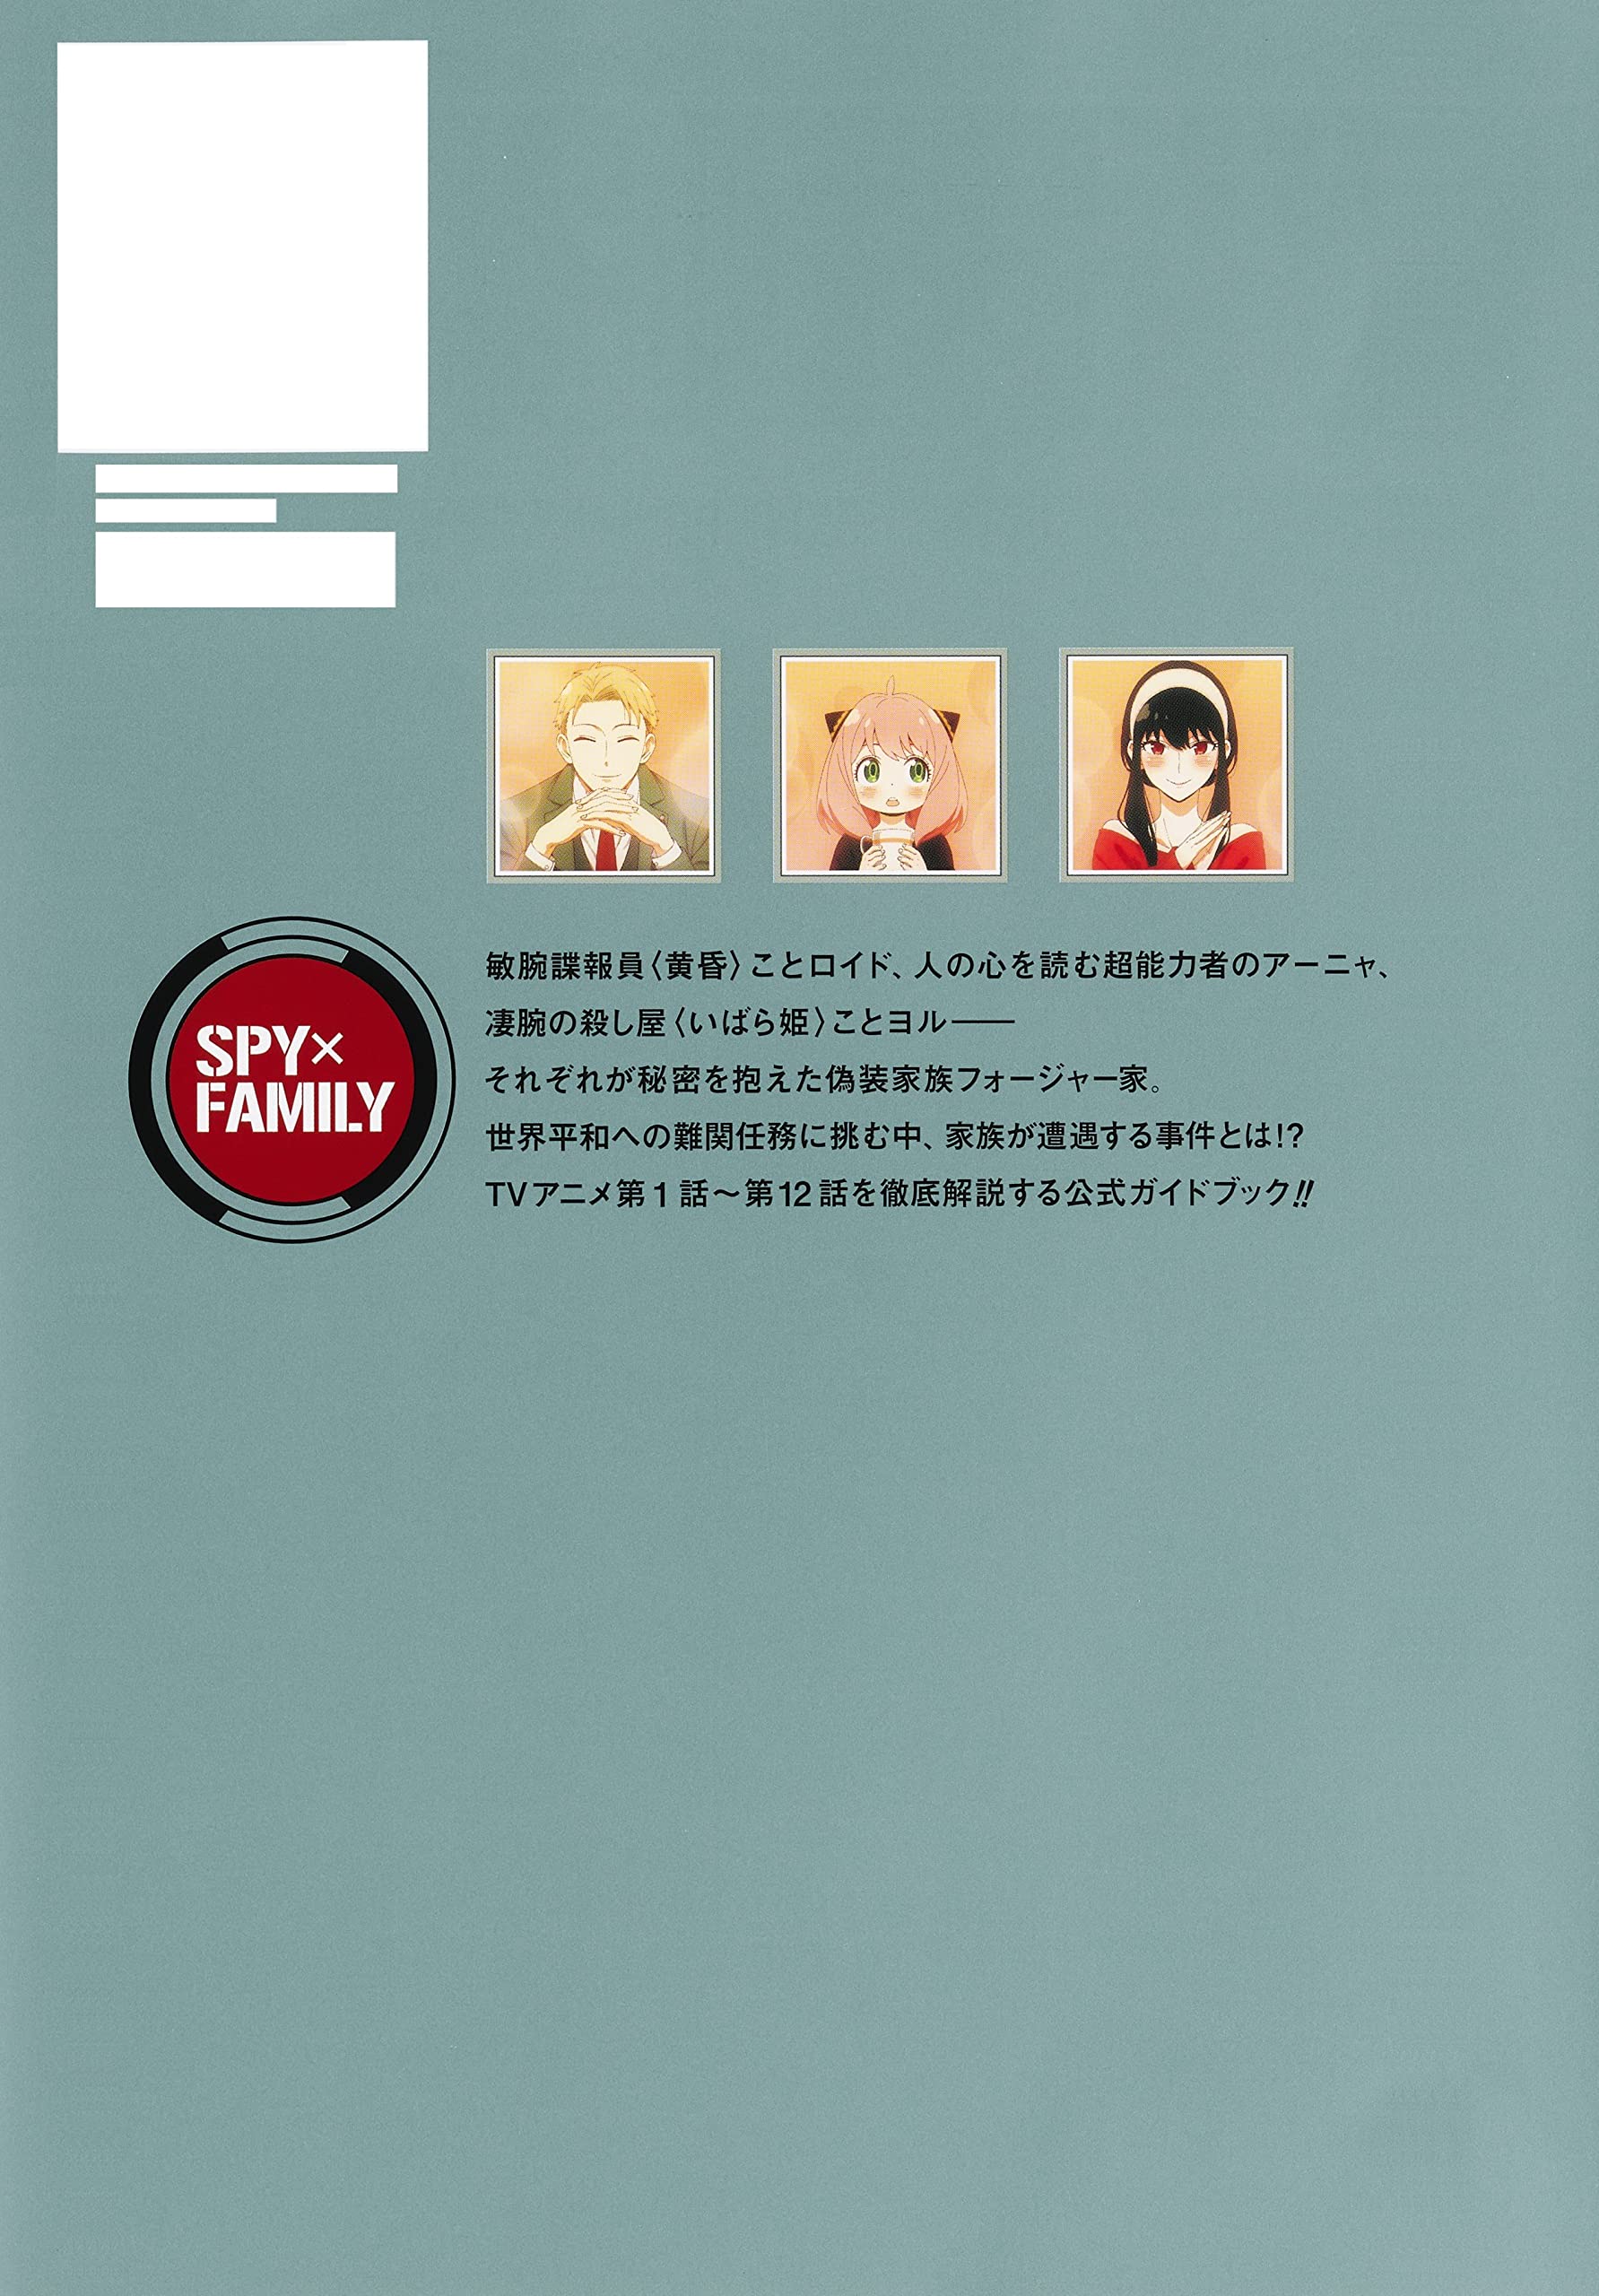 TV аниме [SPY×FAMILY] официальный путеводитель MISSION REPORT:220409-0625 ( коллекционное издание комиксы )